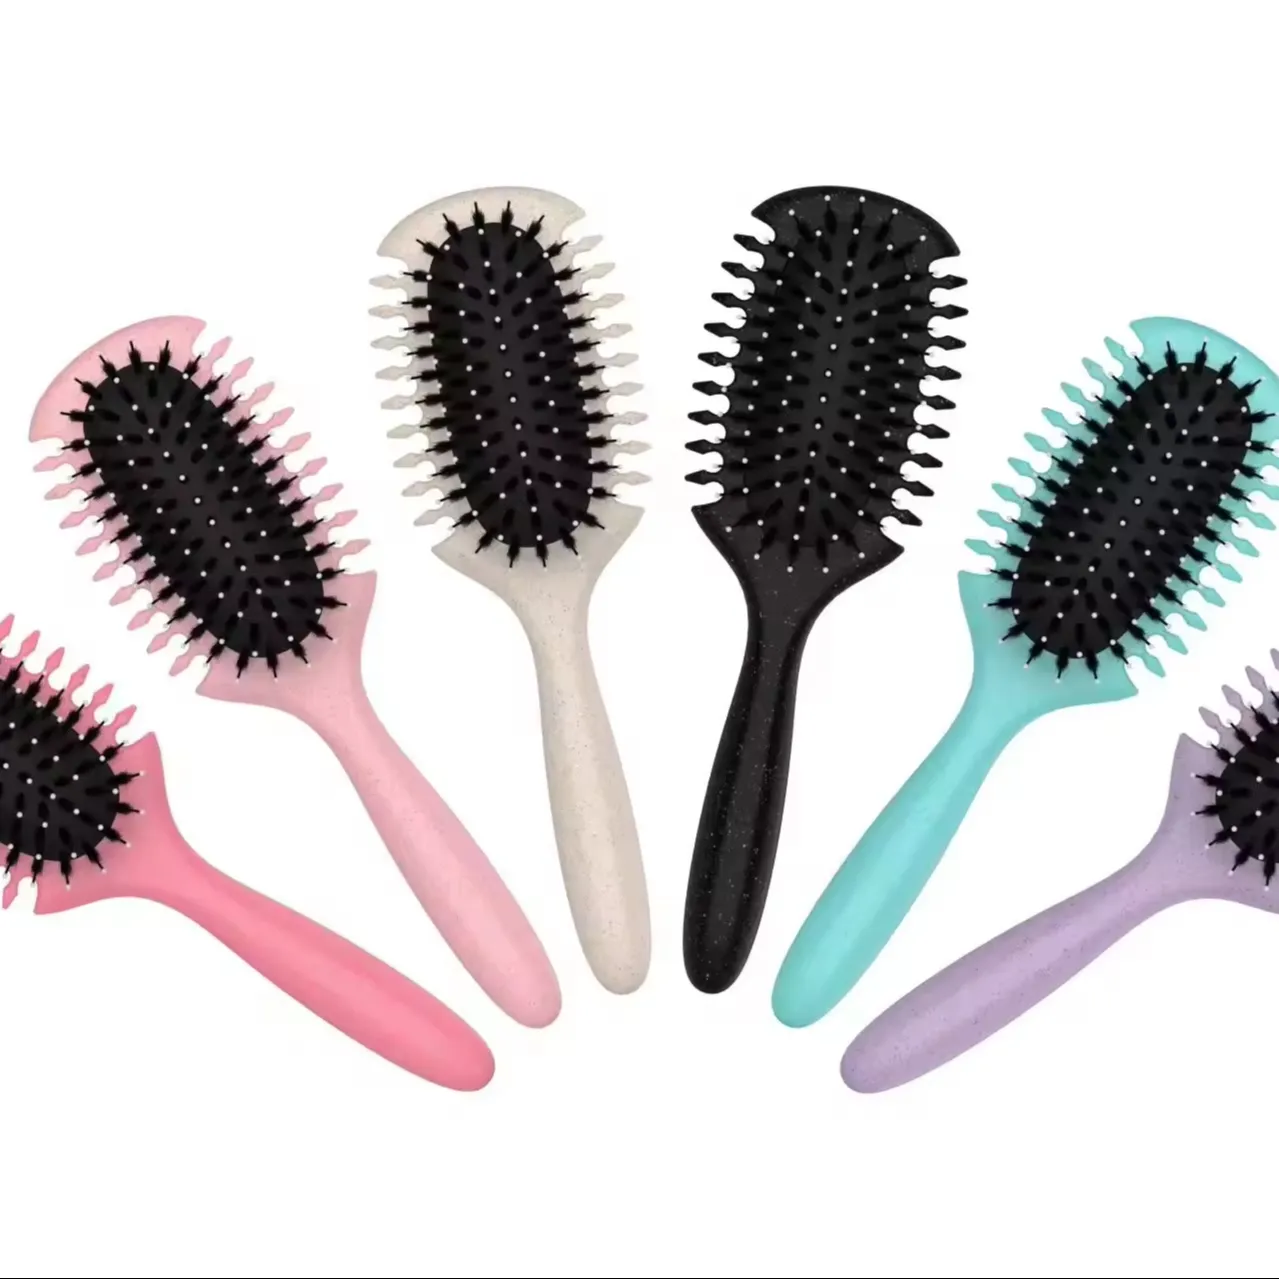 OEM-Hersteller neues Design lockige Haarbürste Sprossen Bürste gelten Kamm Kämmen lockige Haarbürste für Damen und Männer